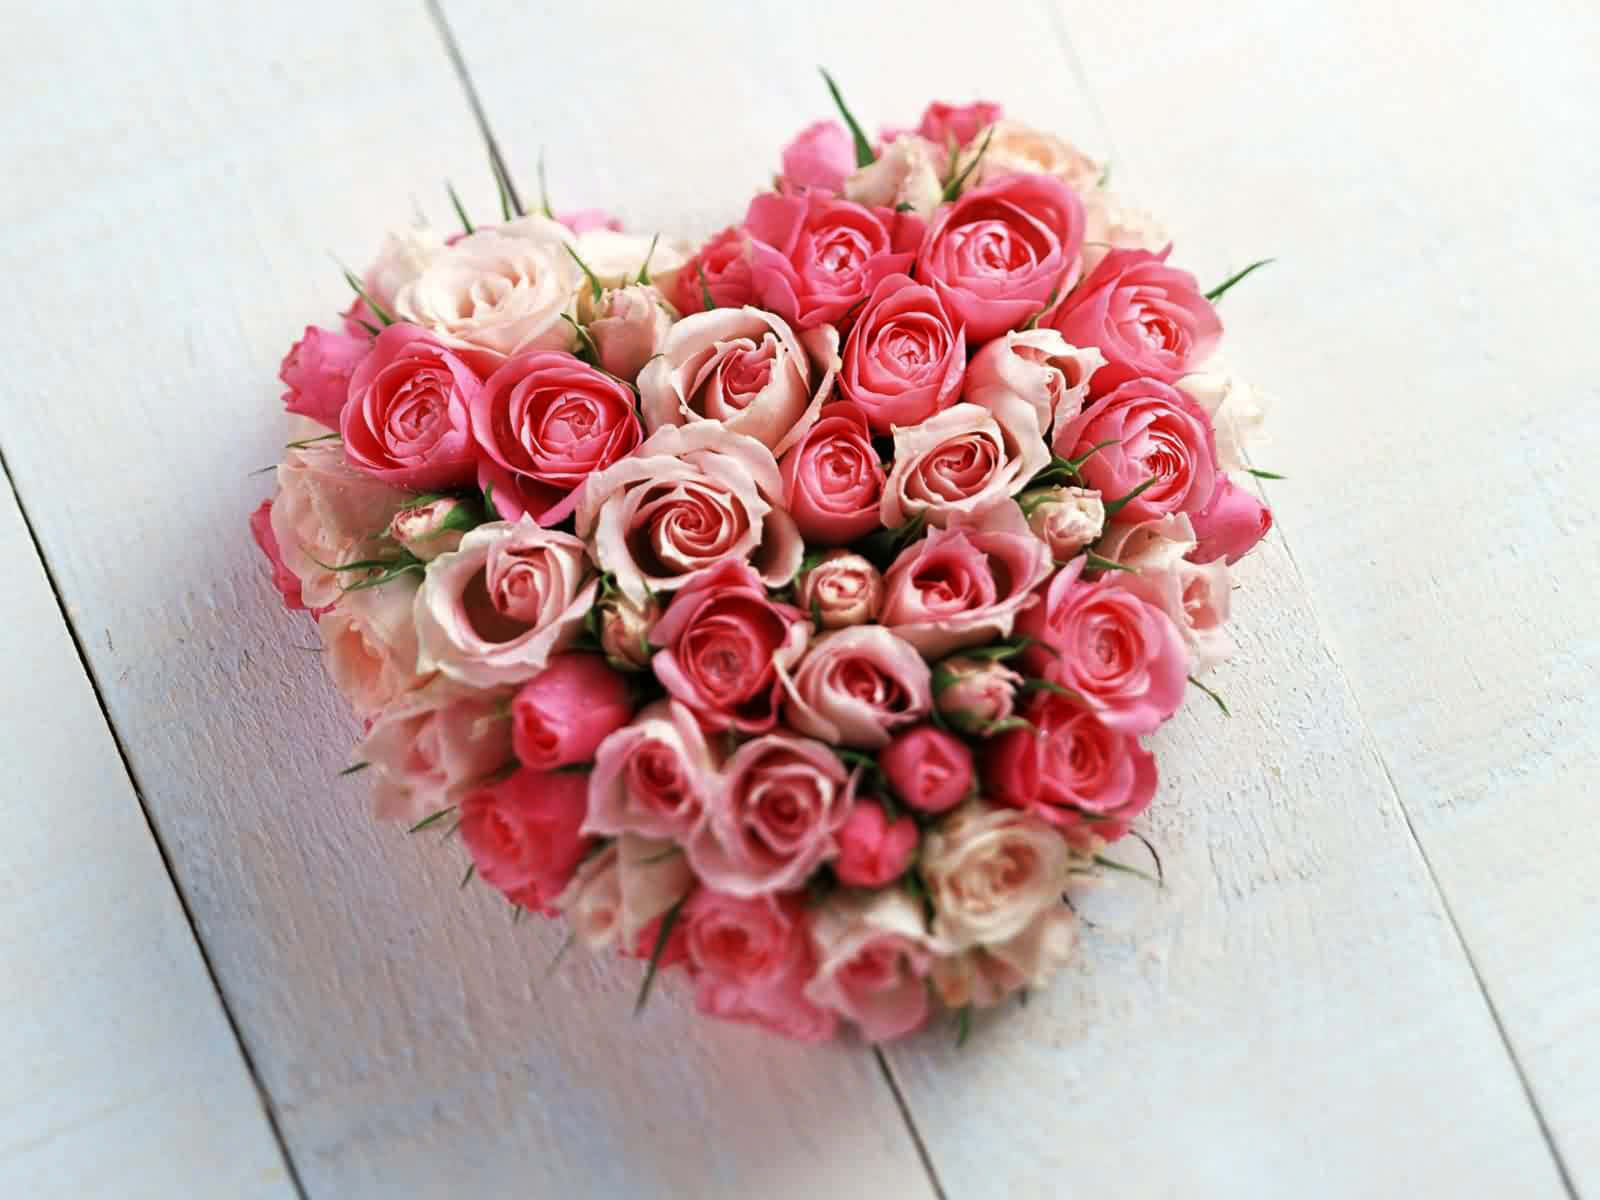 Bellissimoquadro Fotografico Di Un Bouquet Di Rose Rosa A Forma Di Cuore.